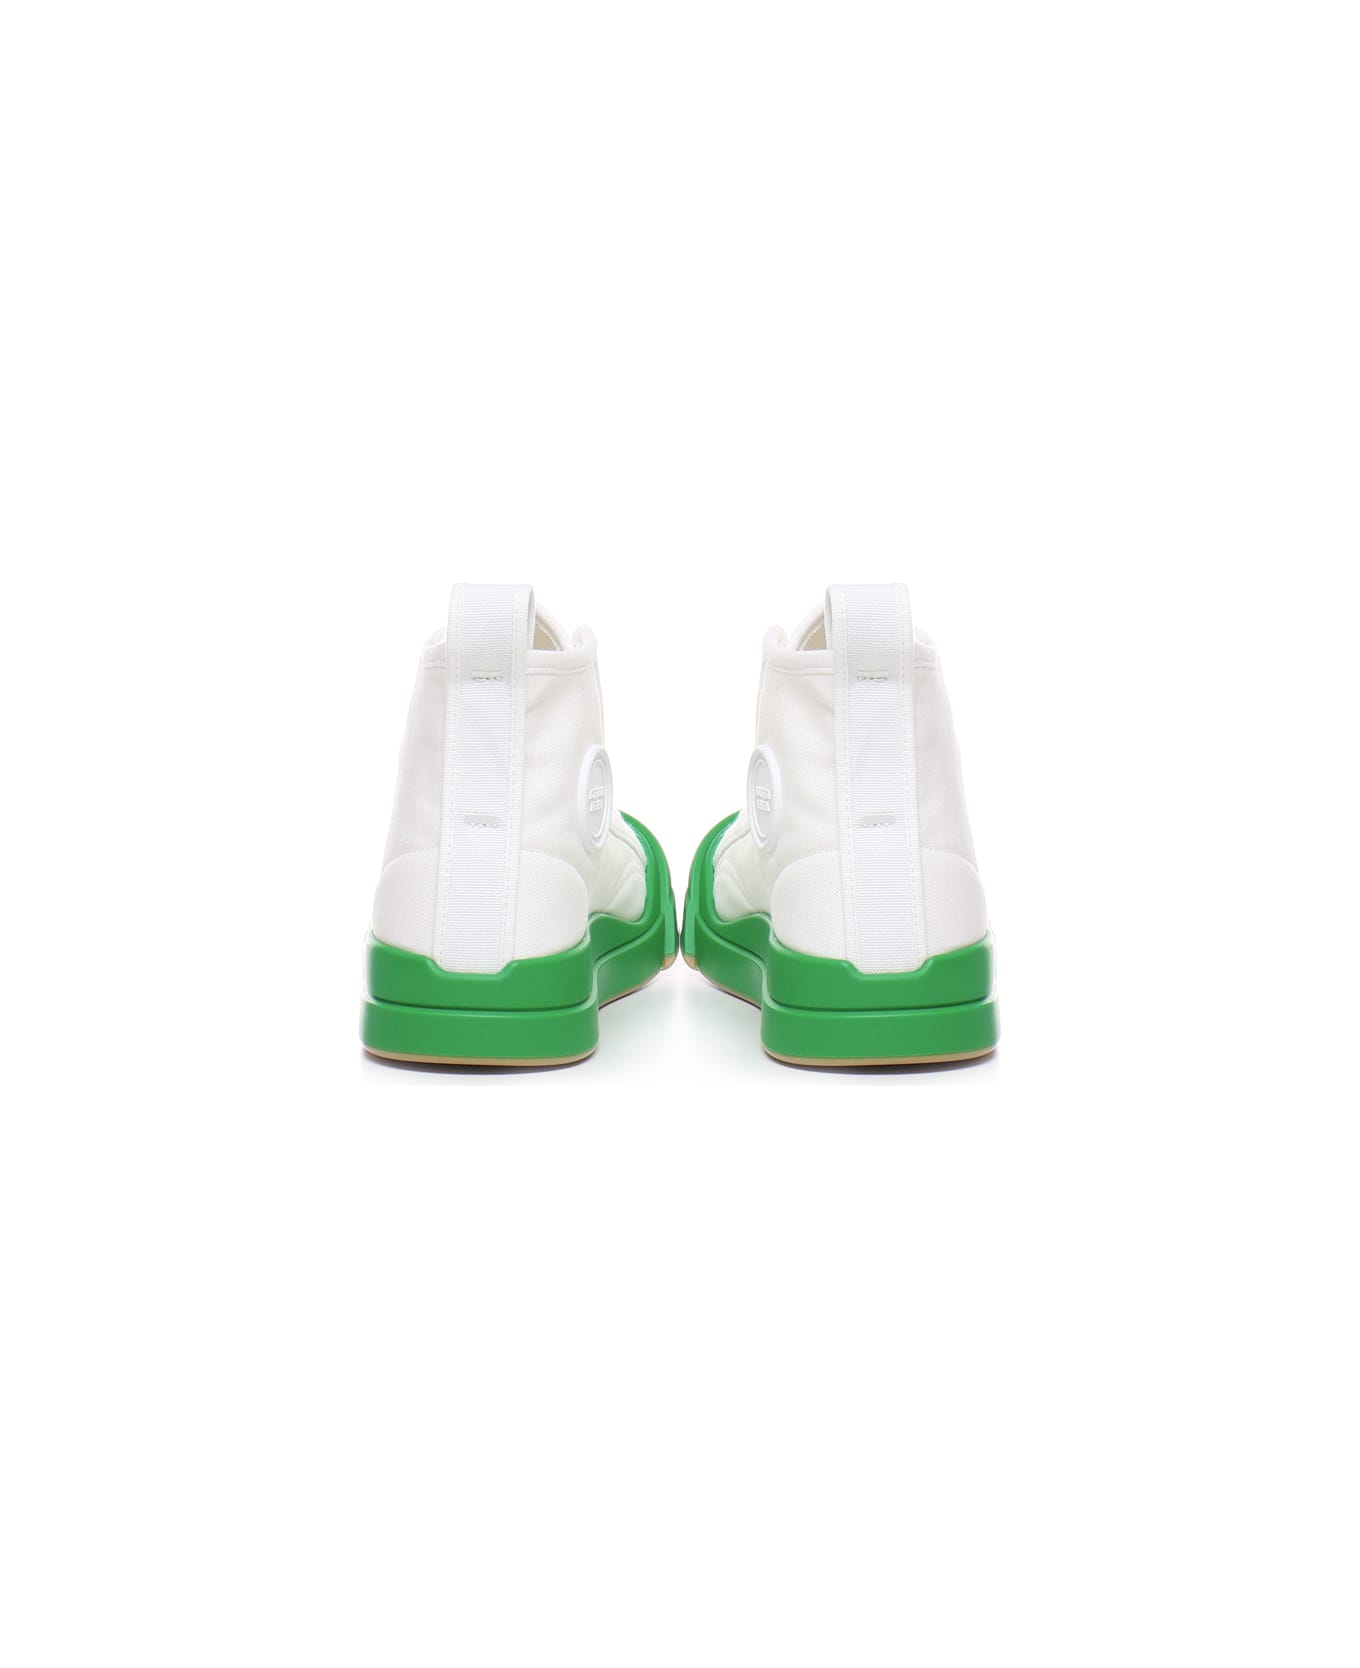 Bottega Veneta Vulcan Sneakers - White, green スニーカー